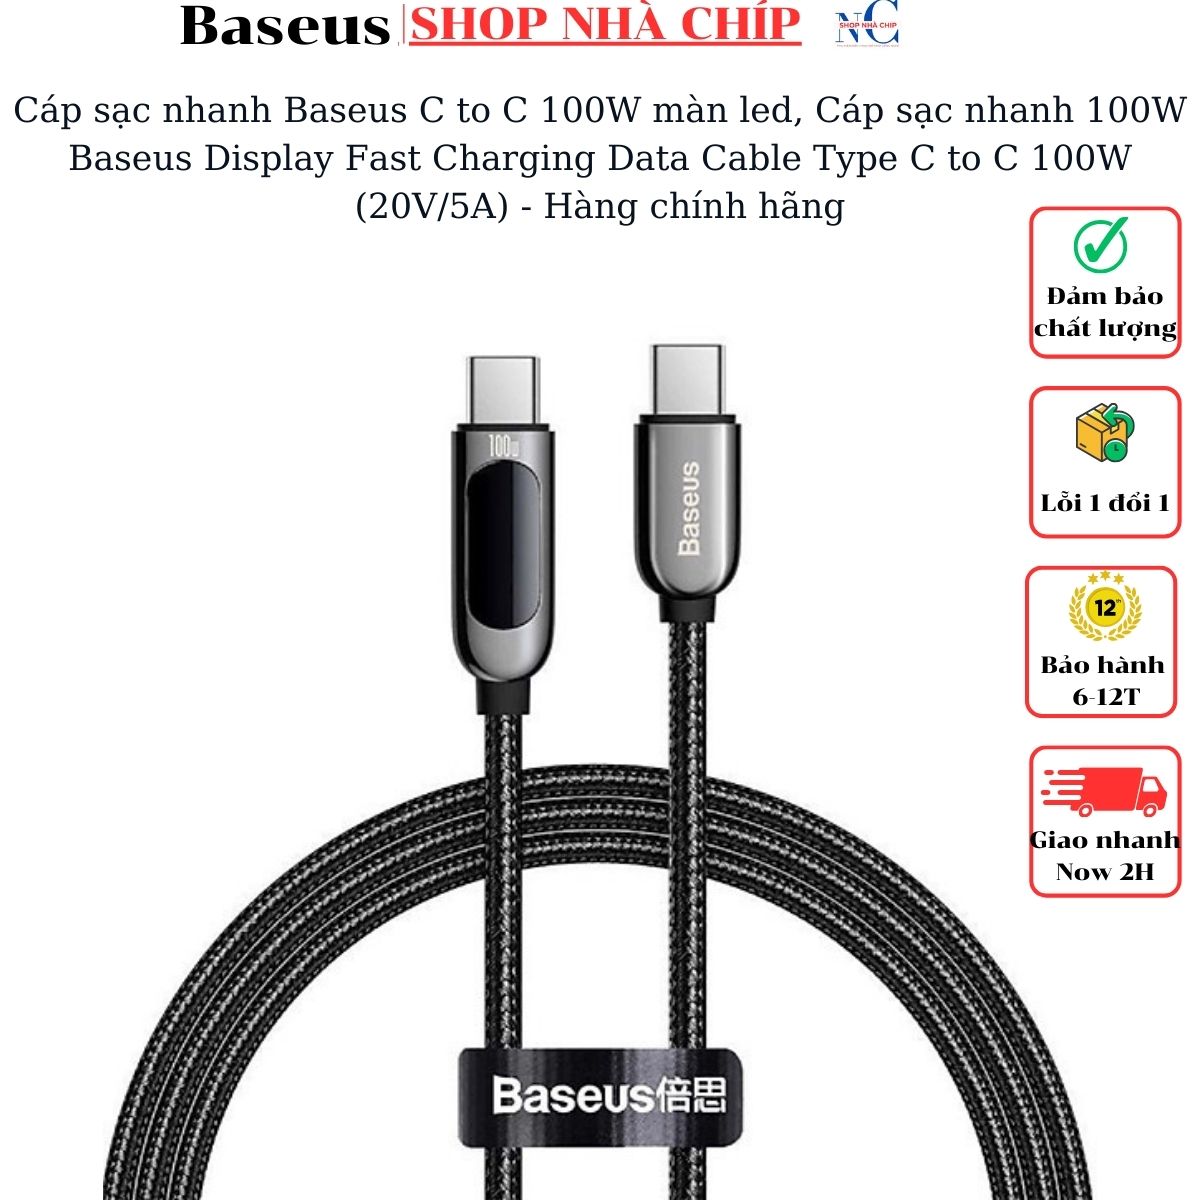 Hình ảnh Cáp sạc nhanh Baseus C to C 100W màn led, Cáp sạc nhanh 100W Baseus Display Fast Charging Data Cable Type C to C 100W (20V/5A) - Hàng chính hãng